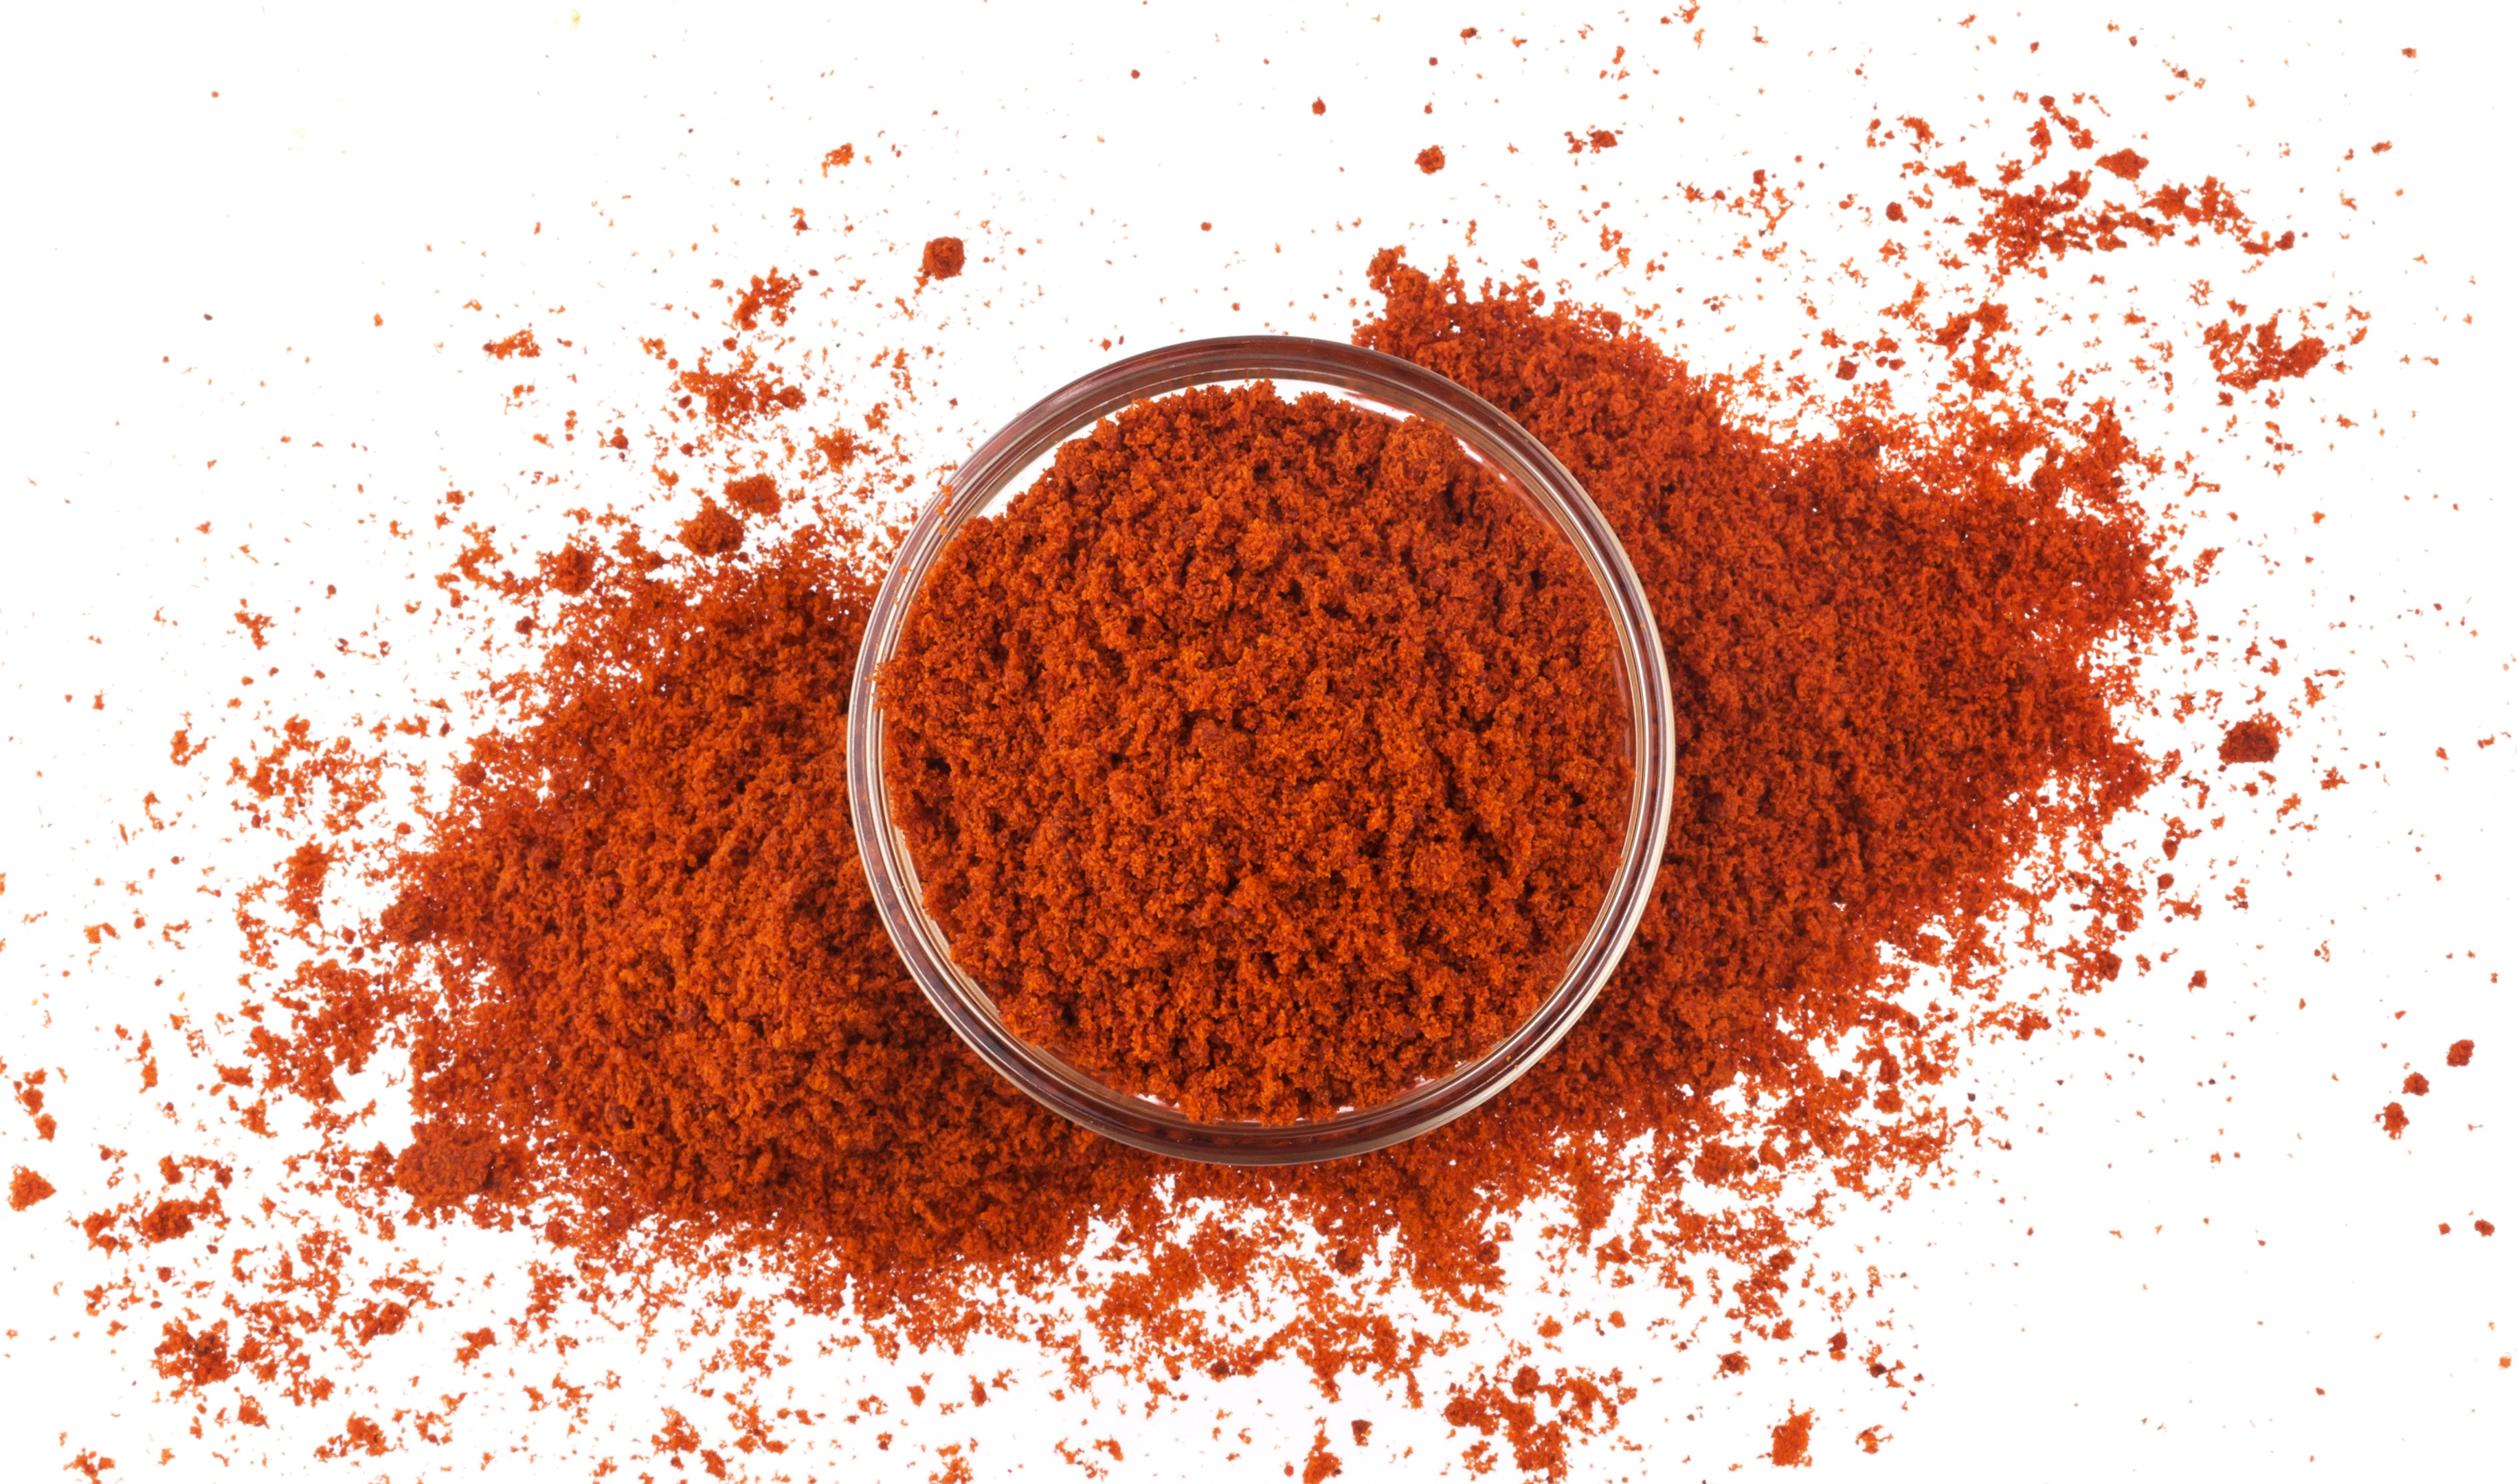 Red paprika powder in bowl